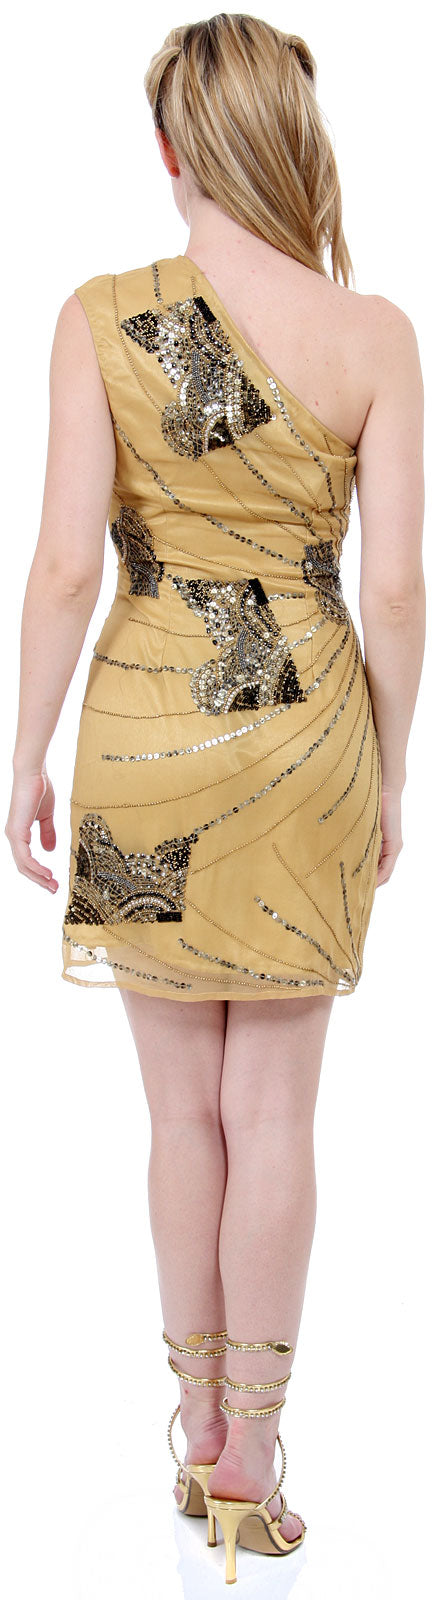 Image of One-shoulder Sequined Formal Dress back in Mustard Gold